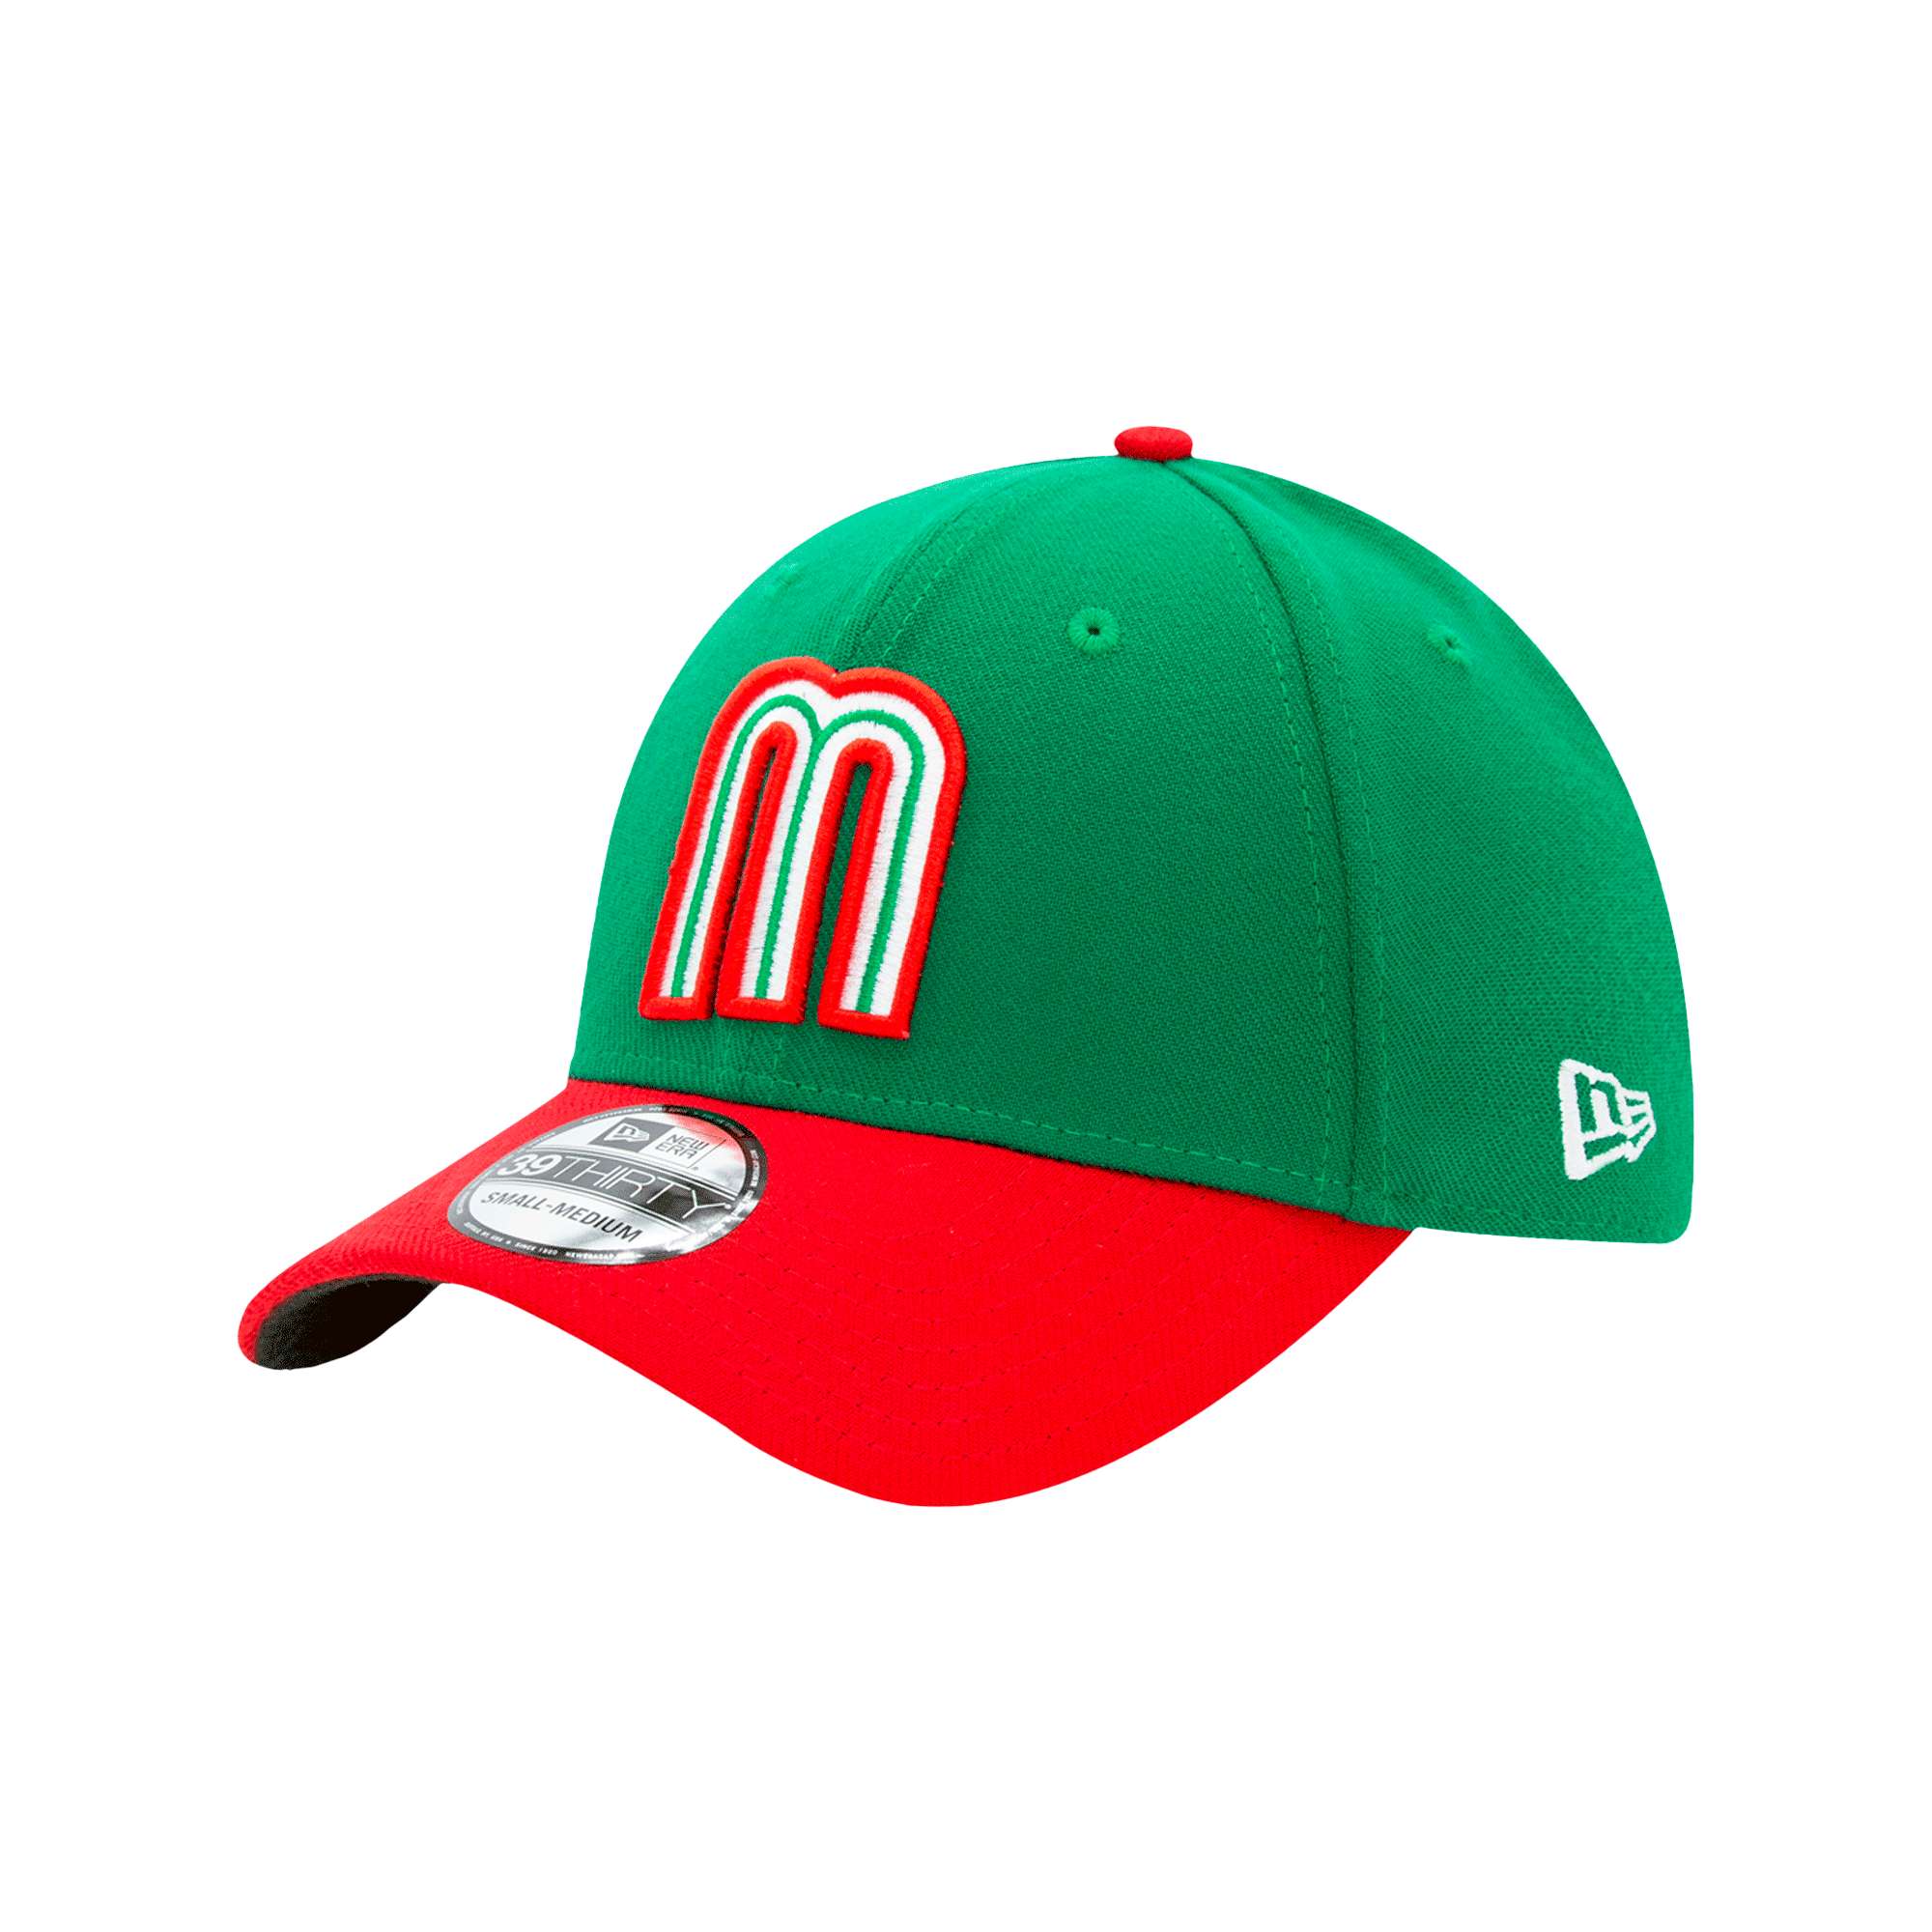 Neón, el nuevo color de las gorras New Era para la LMB – New Era Cap México